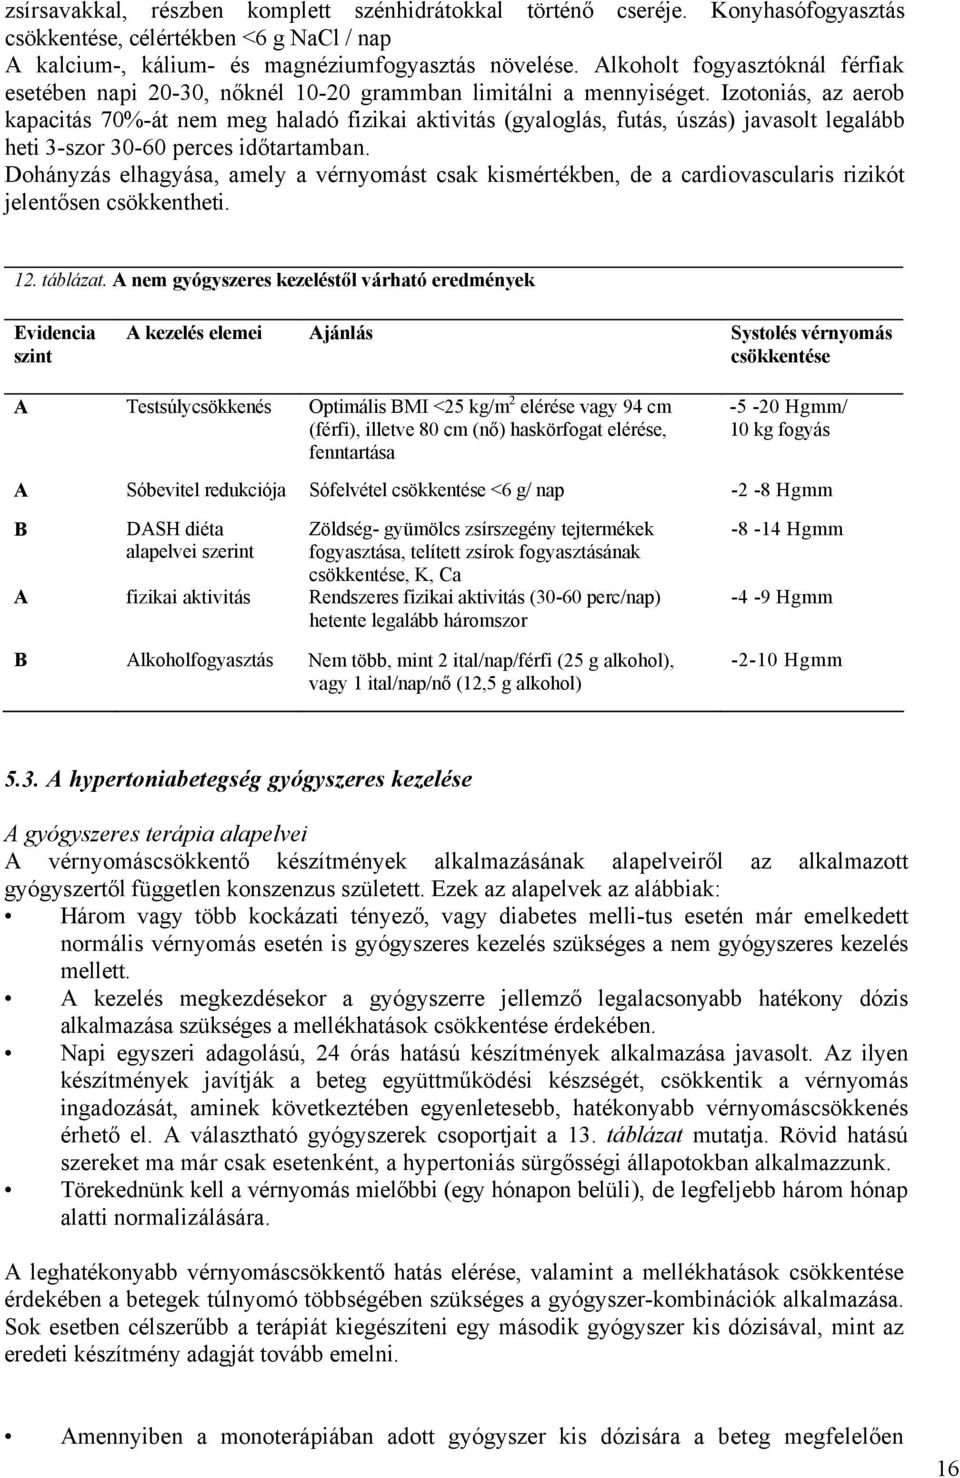 nemzetközi irányelvek a magas vérnyomás kezelésére)